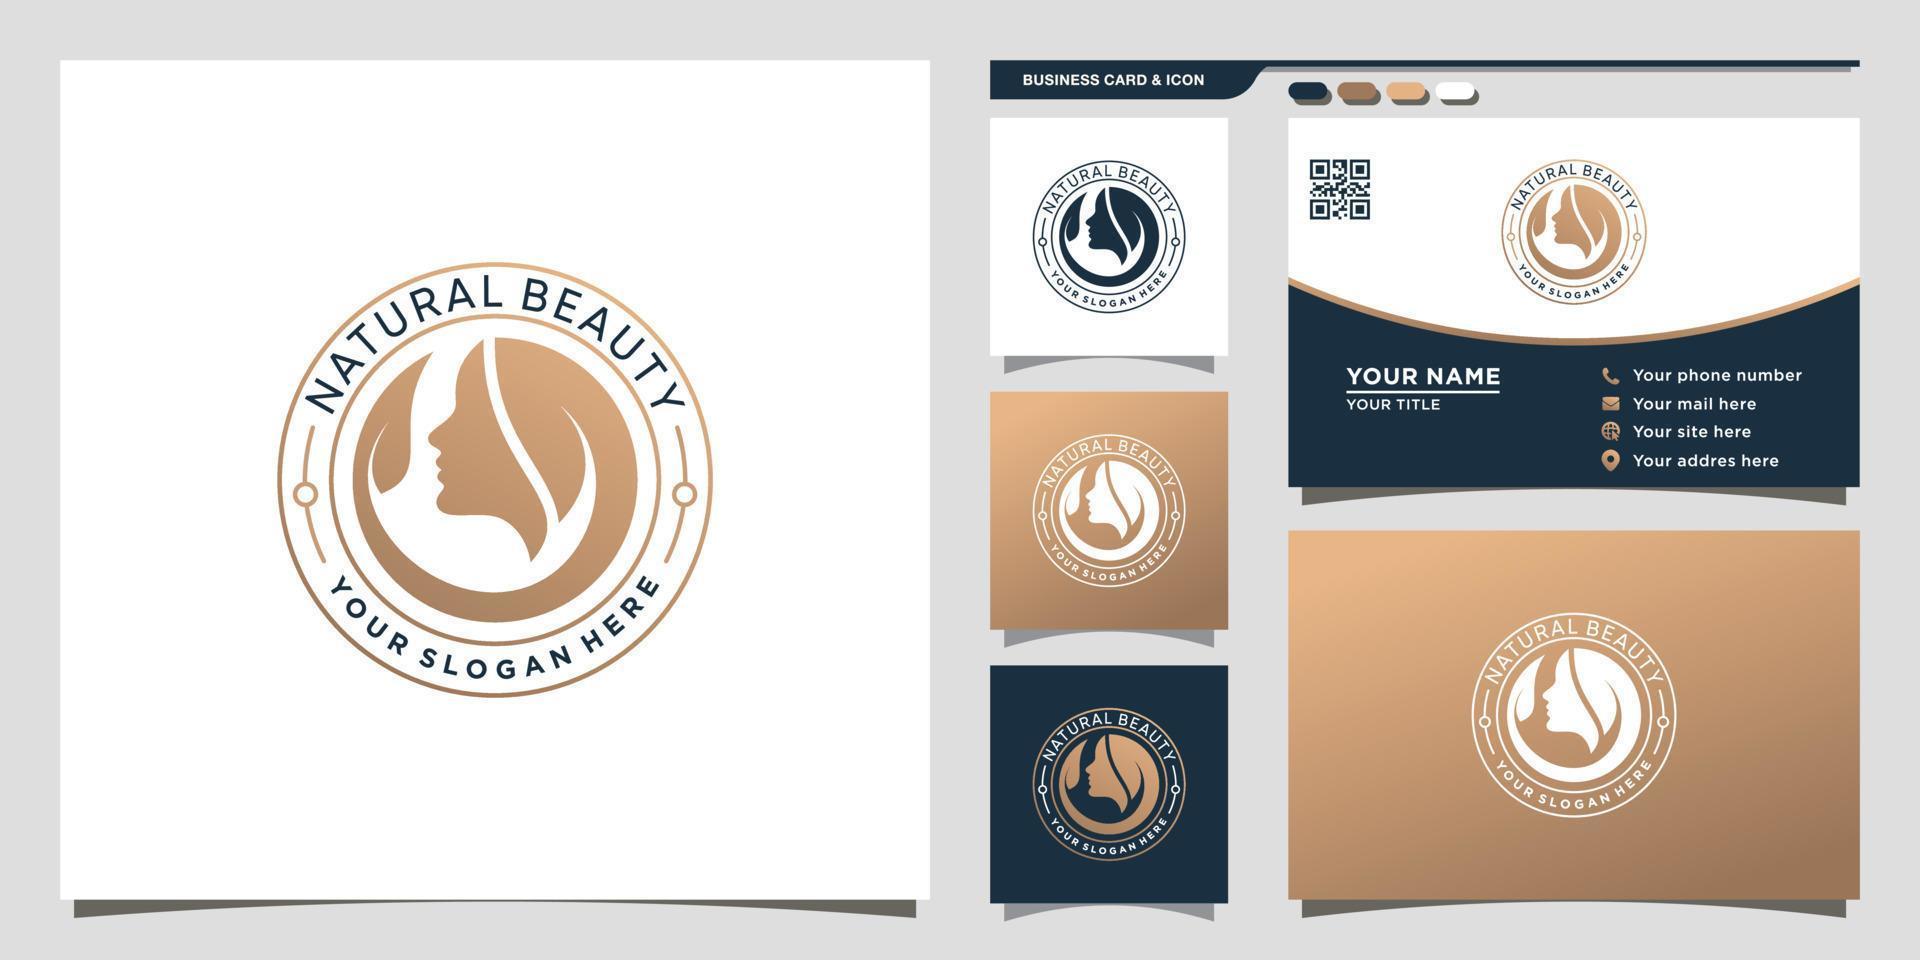 logotipo de belleza natural con concepto moderno único y vector premium de diseño de tarjeta de visita